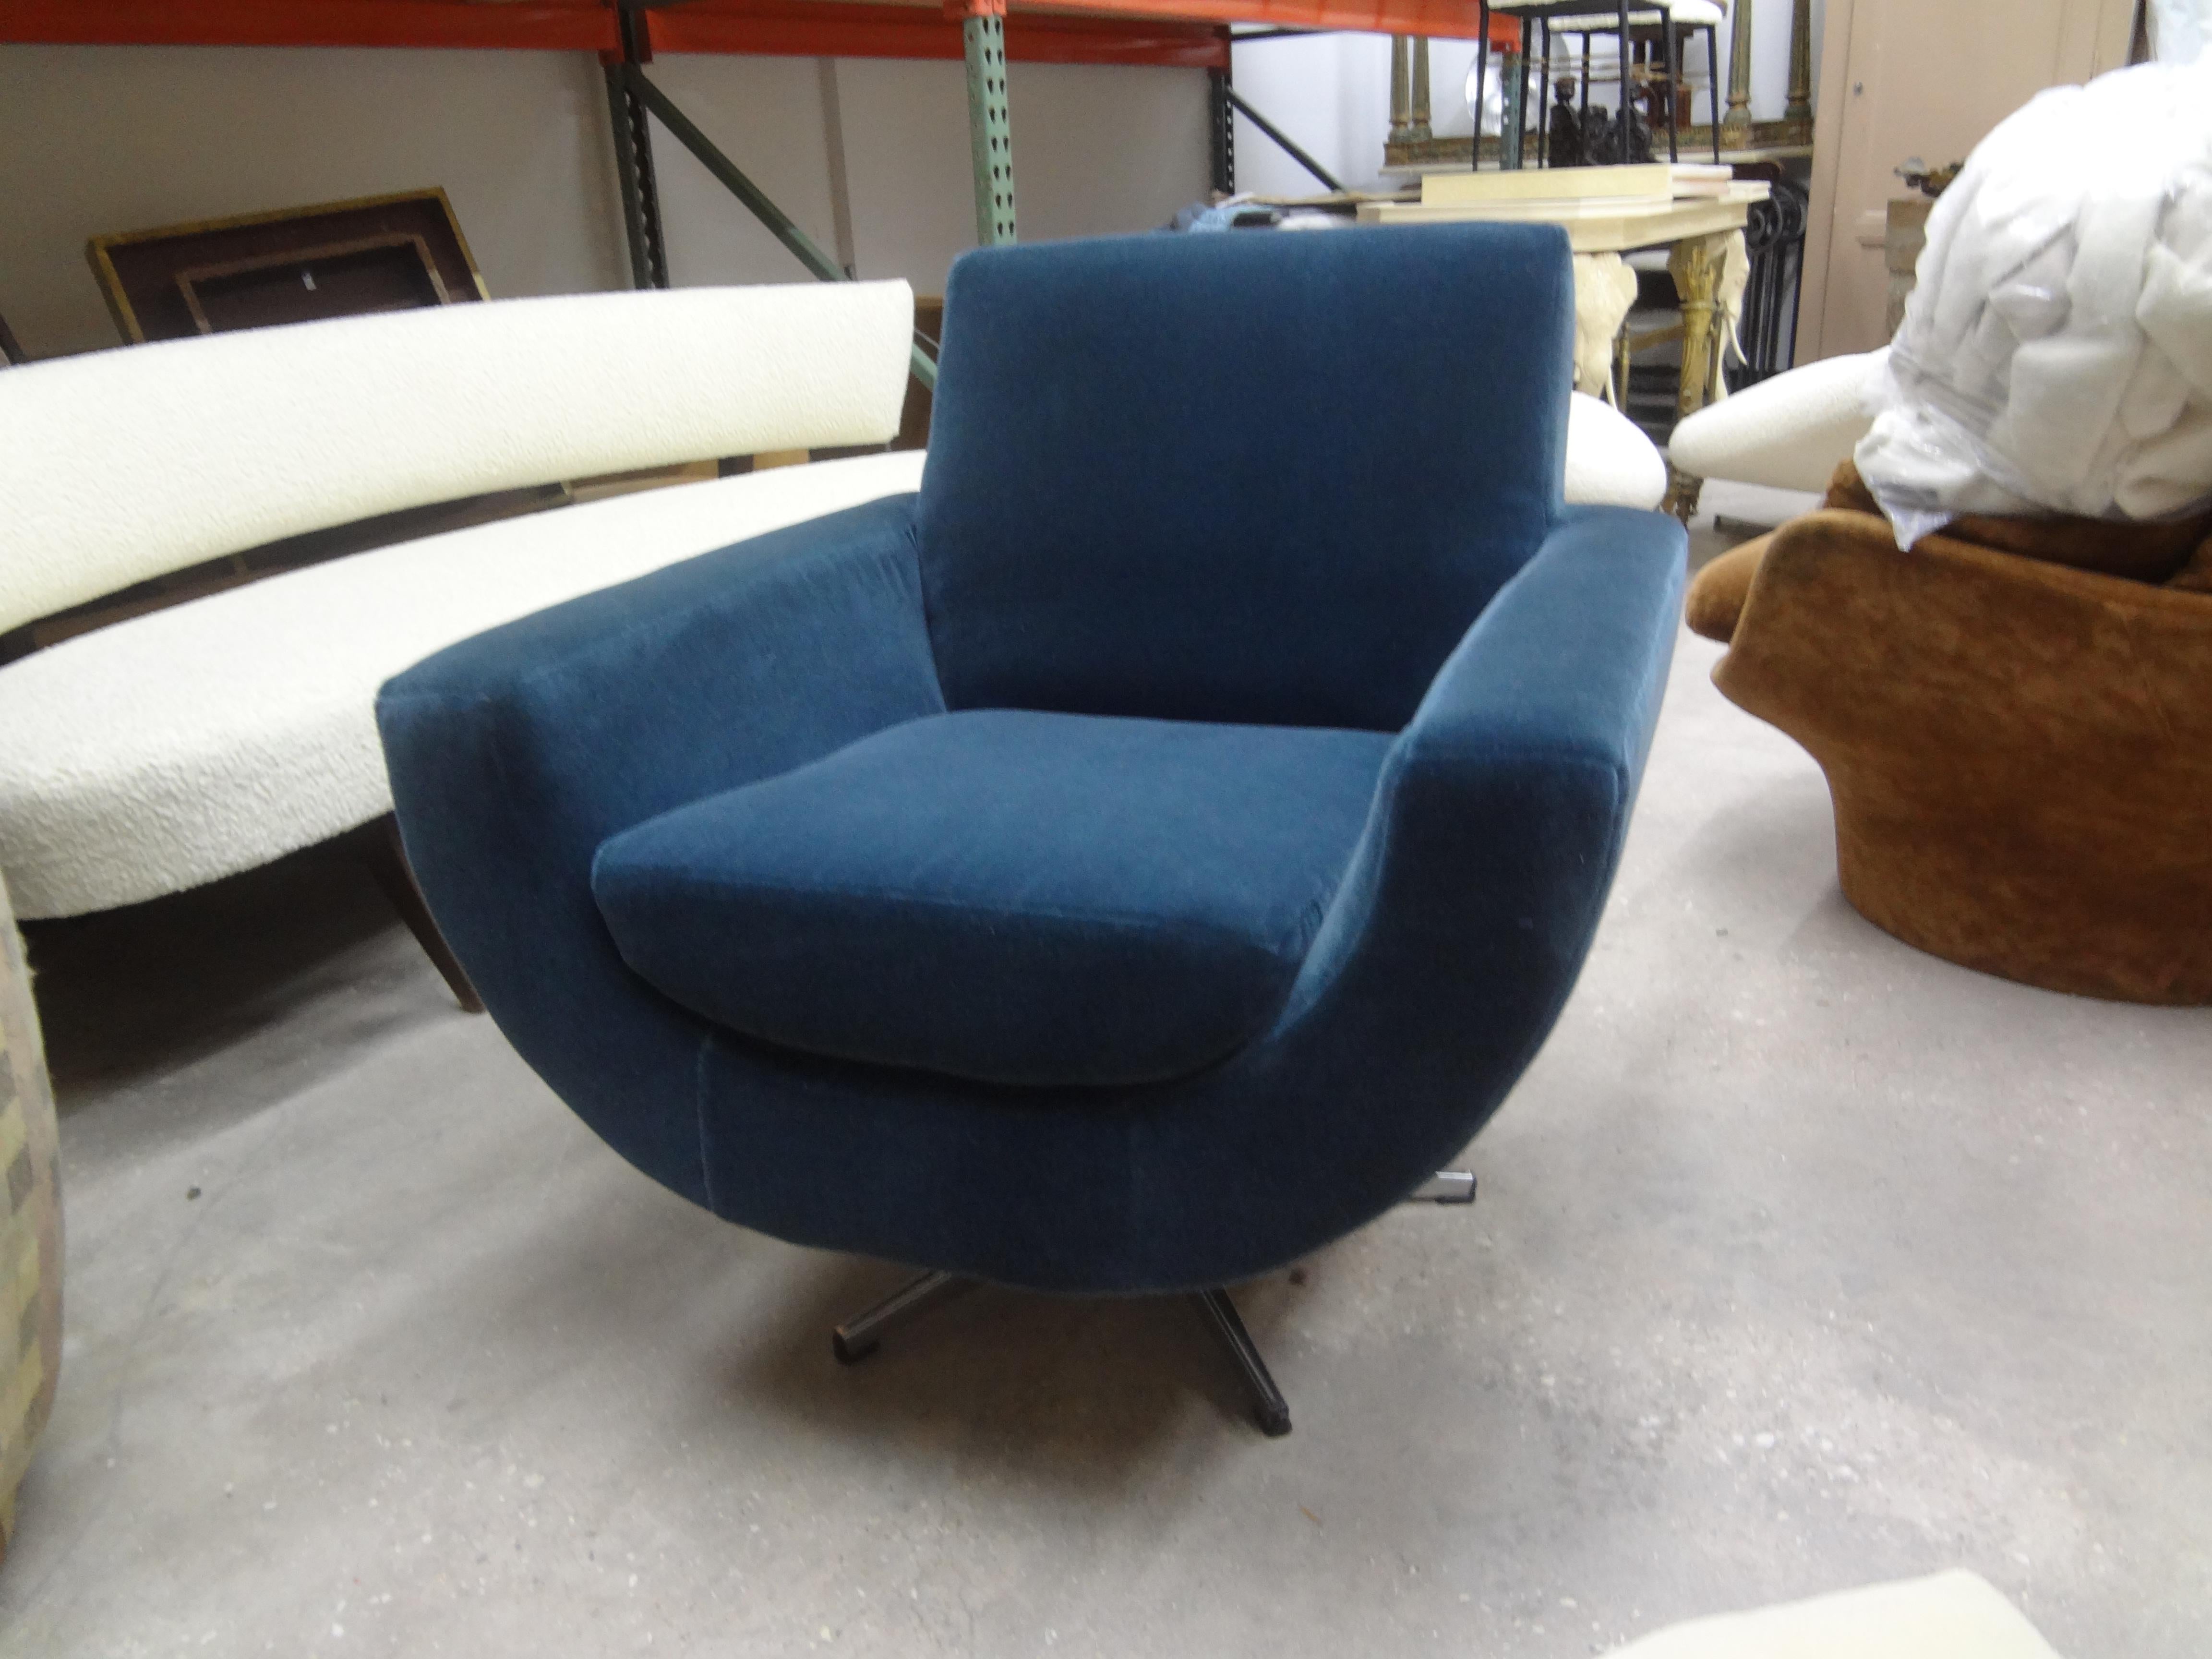 Chaise pivotante de style Milo Baughman, moderne du milieu du siècle dernier. Cette chaise pivotante galbée du milieu du siècle dernier a été récemment recouverte d'un magnifique tissu en mohair bleu acier.
Confortable et étonnante sous tous les